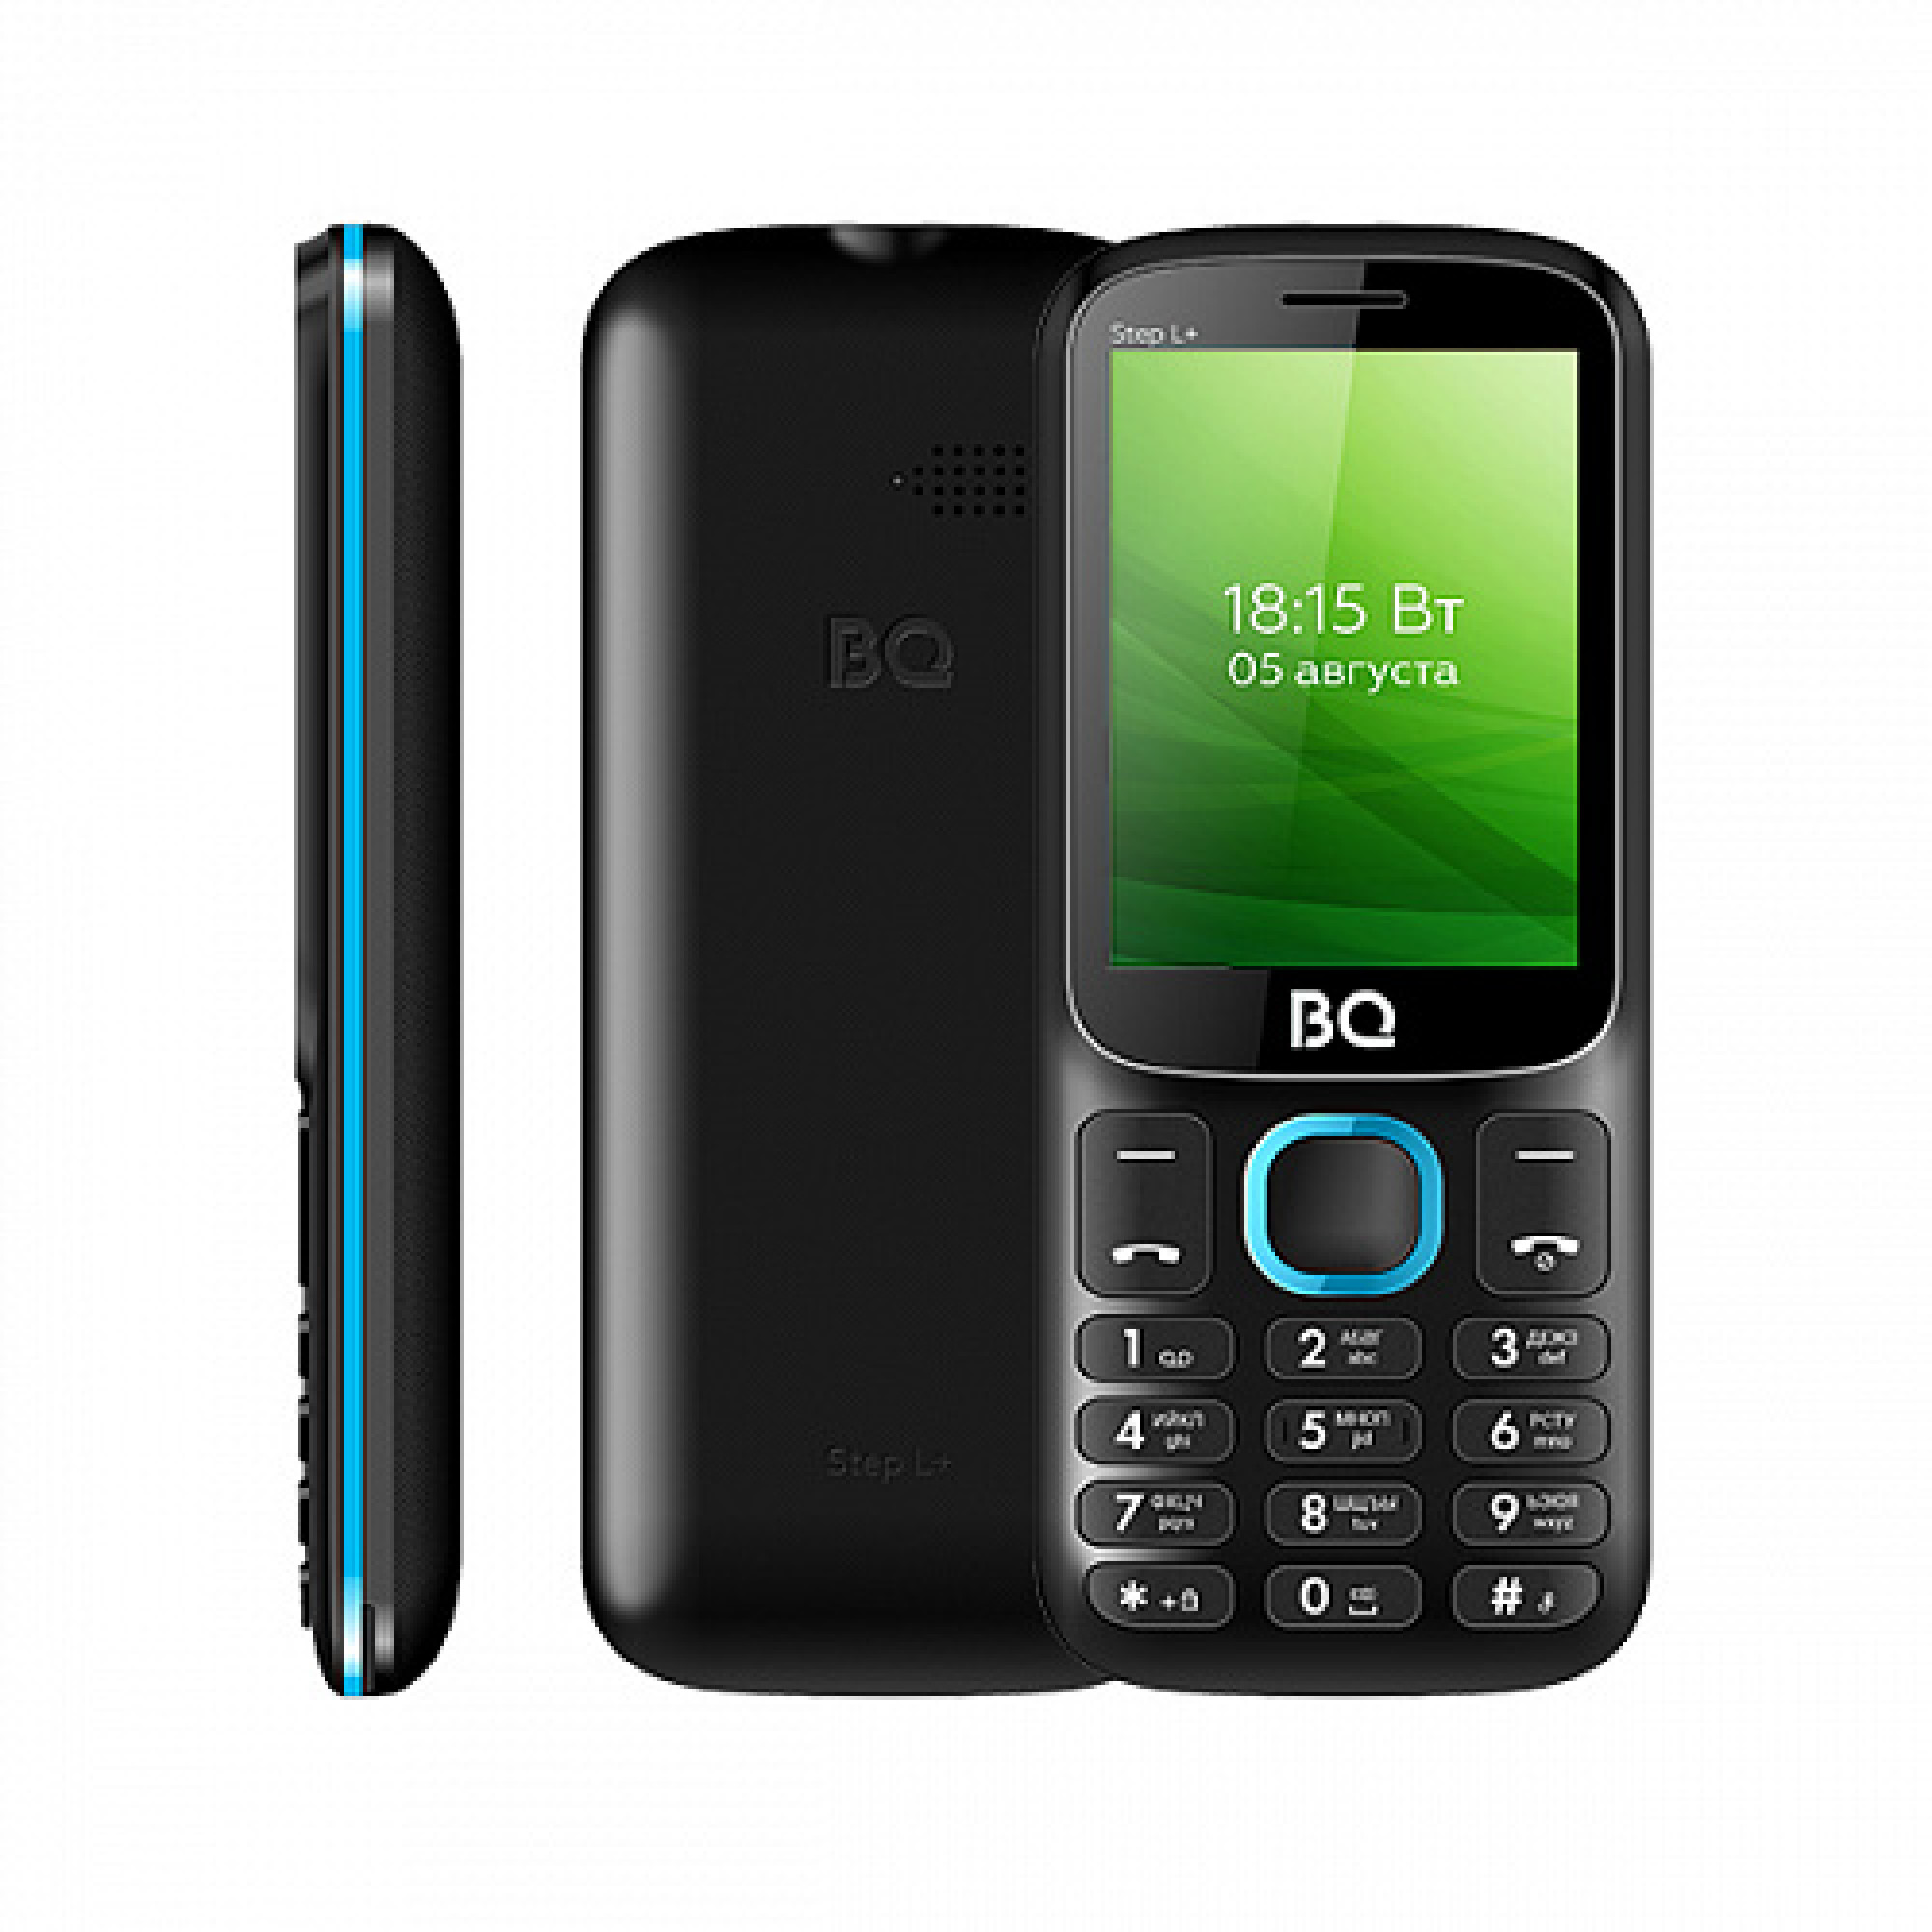 Мобильный телефон BQ BQ-2440 Step L+ (черный/голубой)